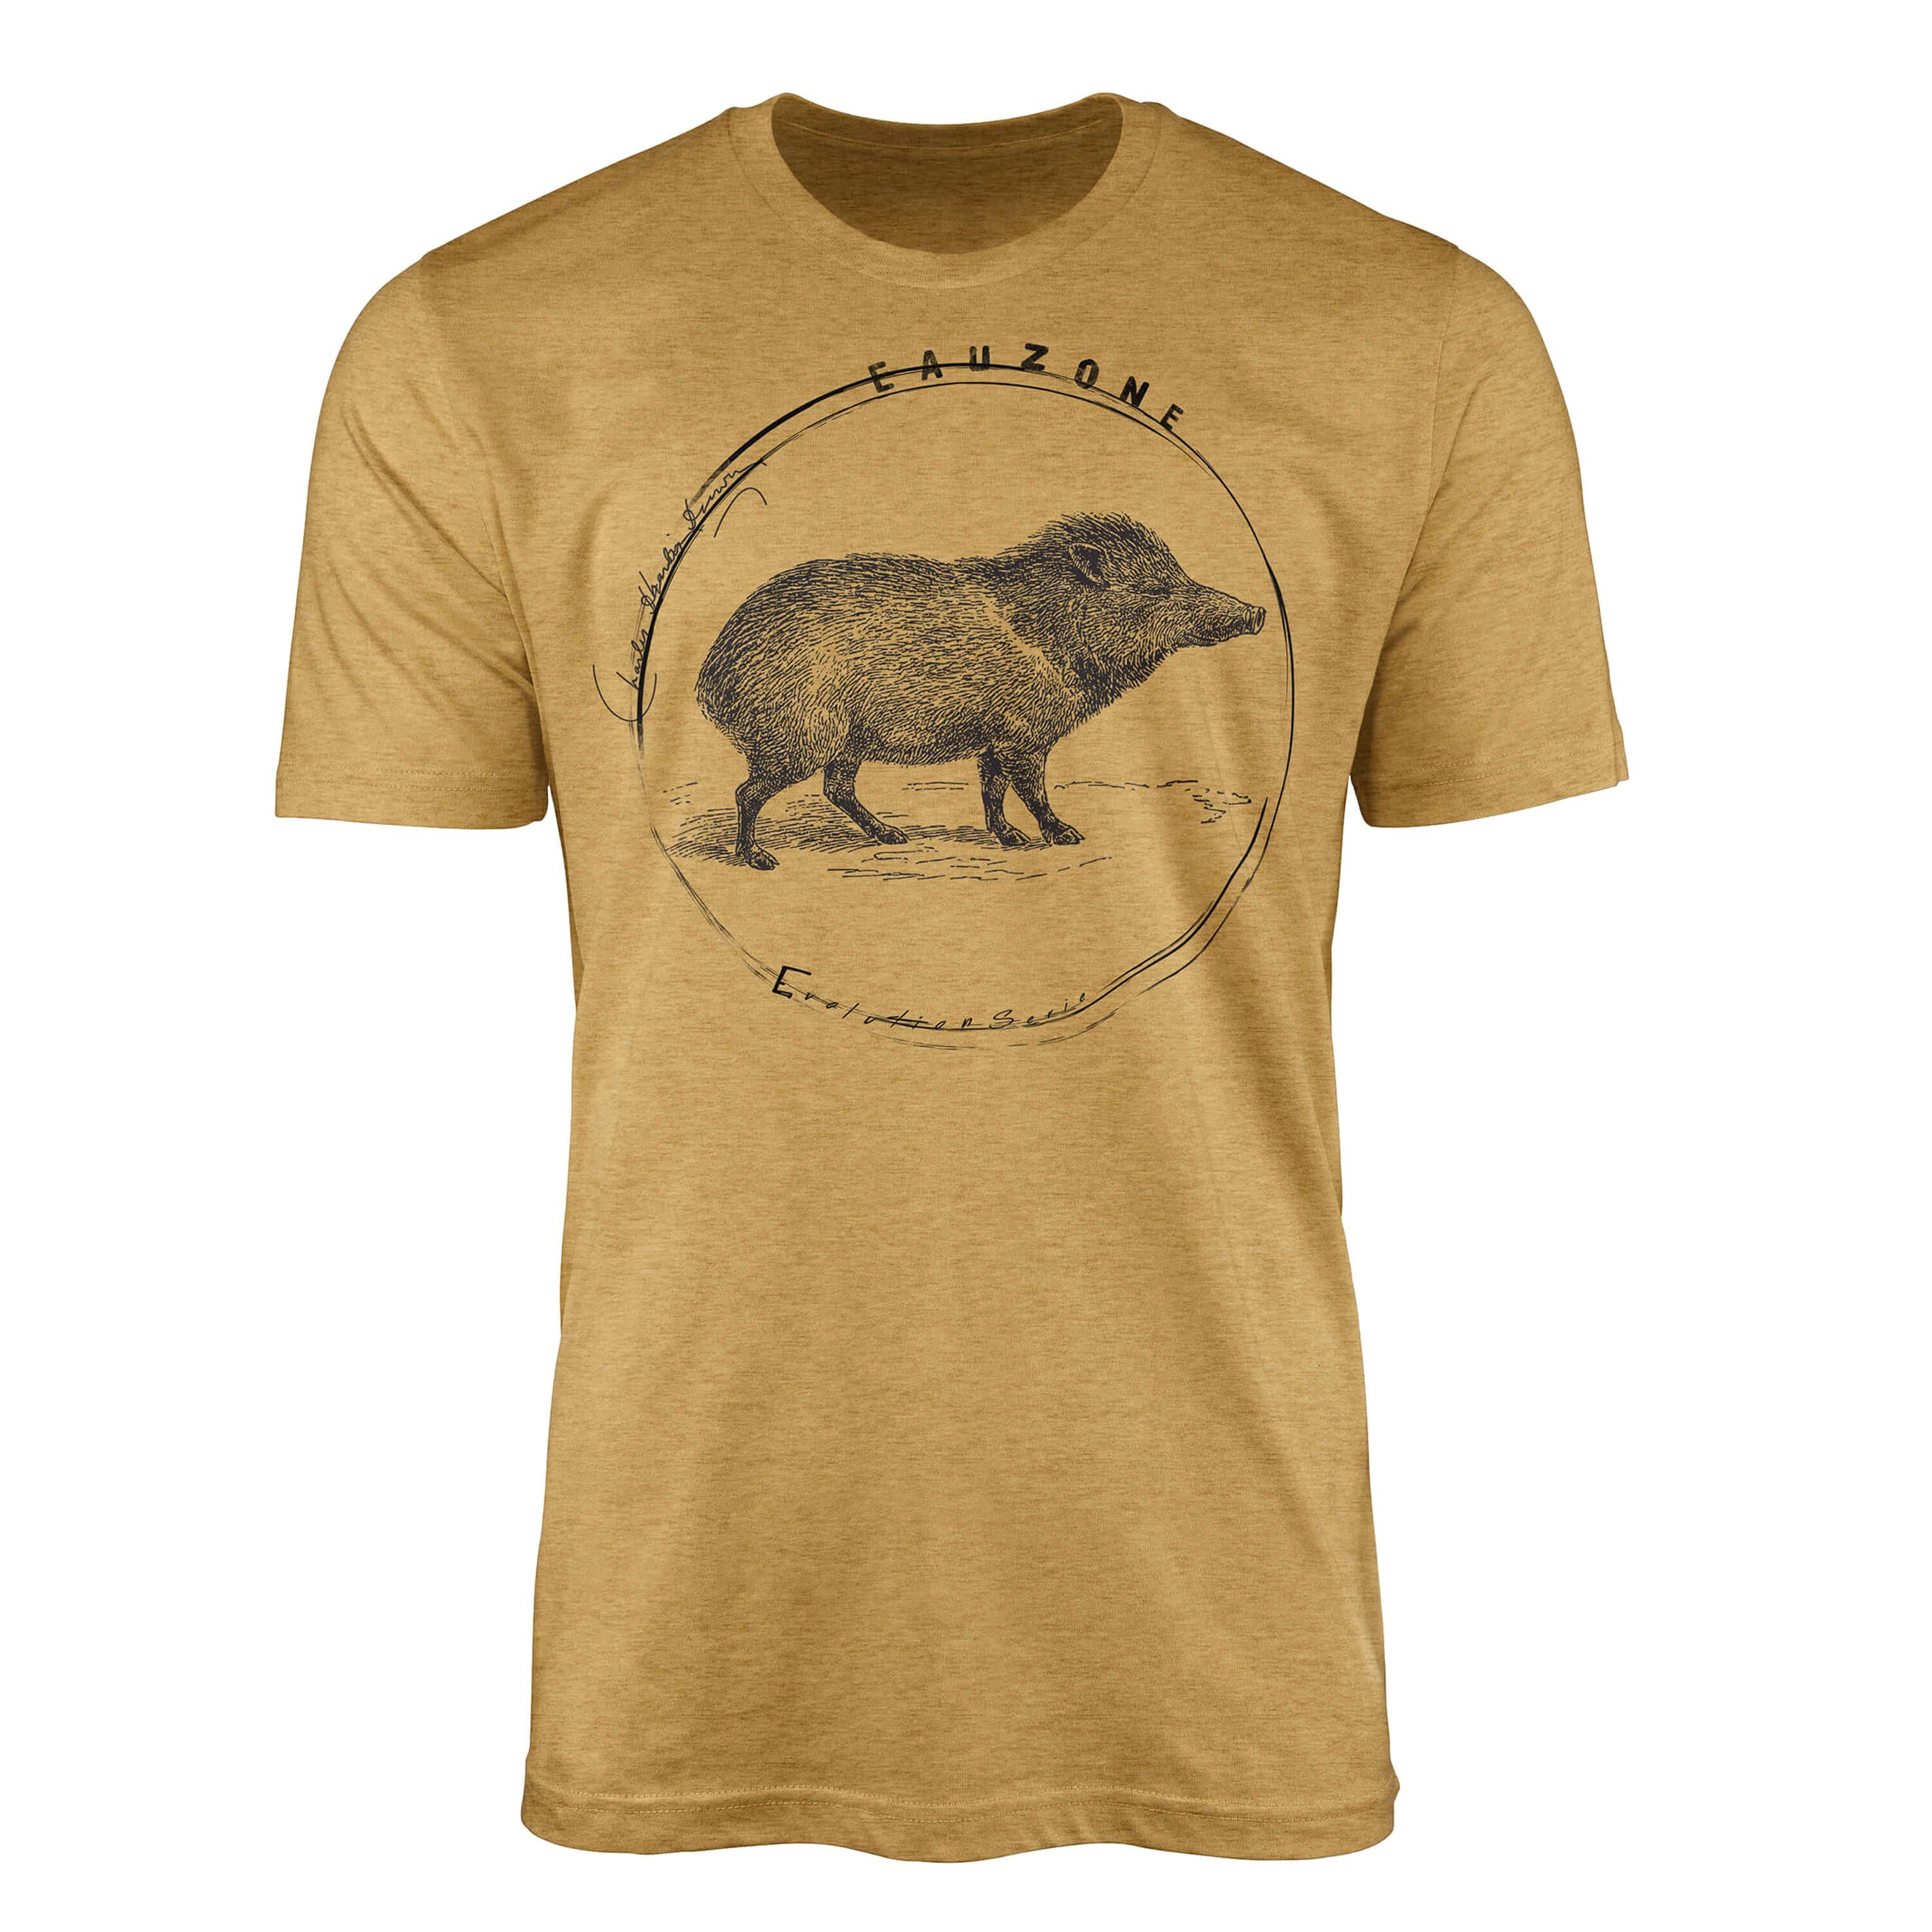 Angemessener Preis Sinus Art T-Shirt Evolution Wildschwein Herren Gold T-Shirt Antique